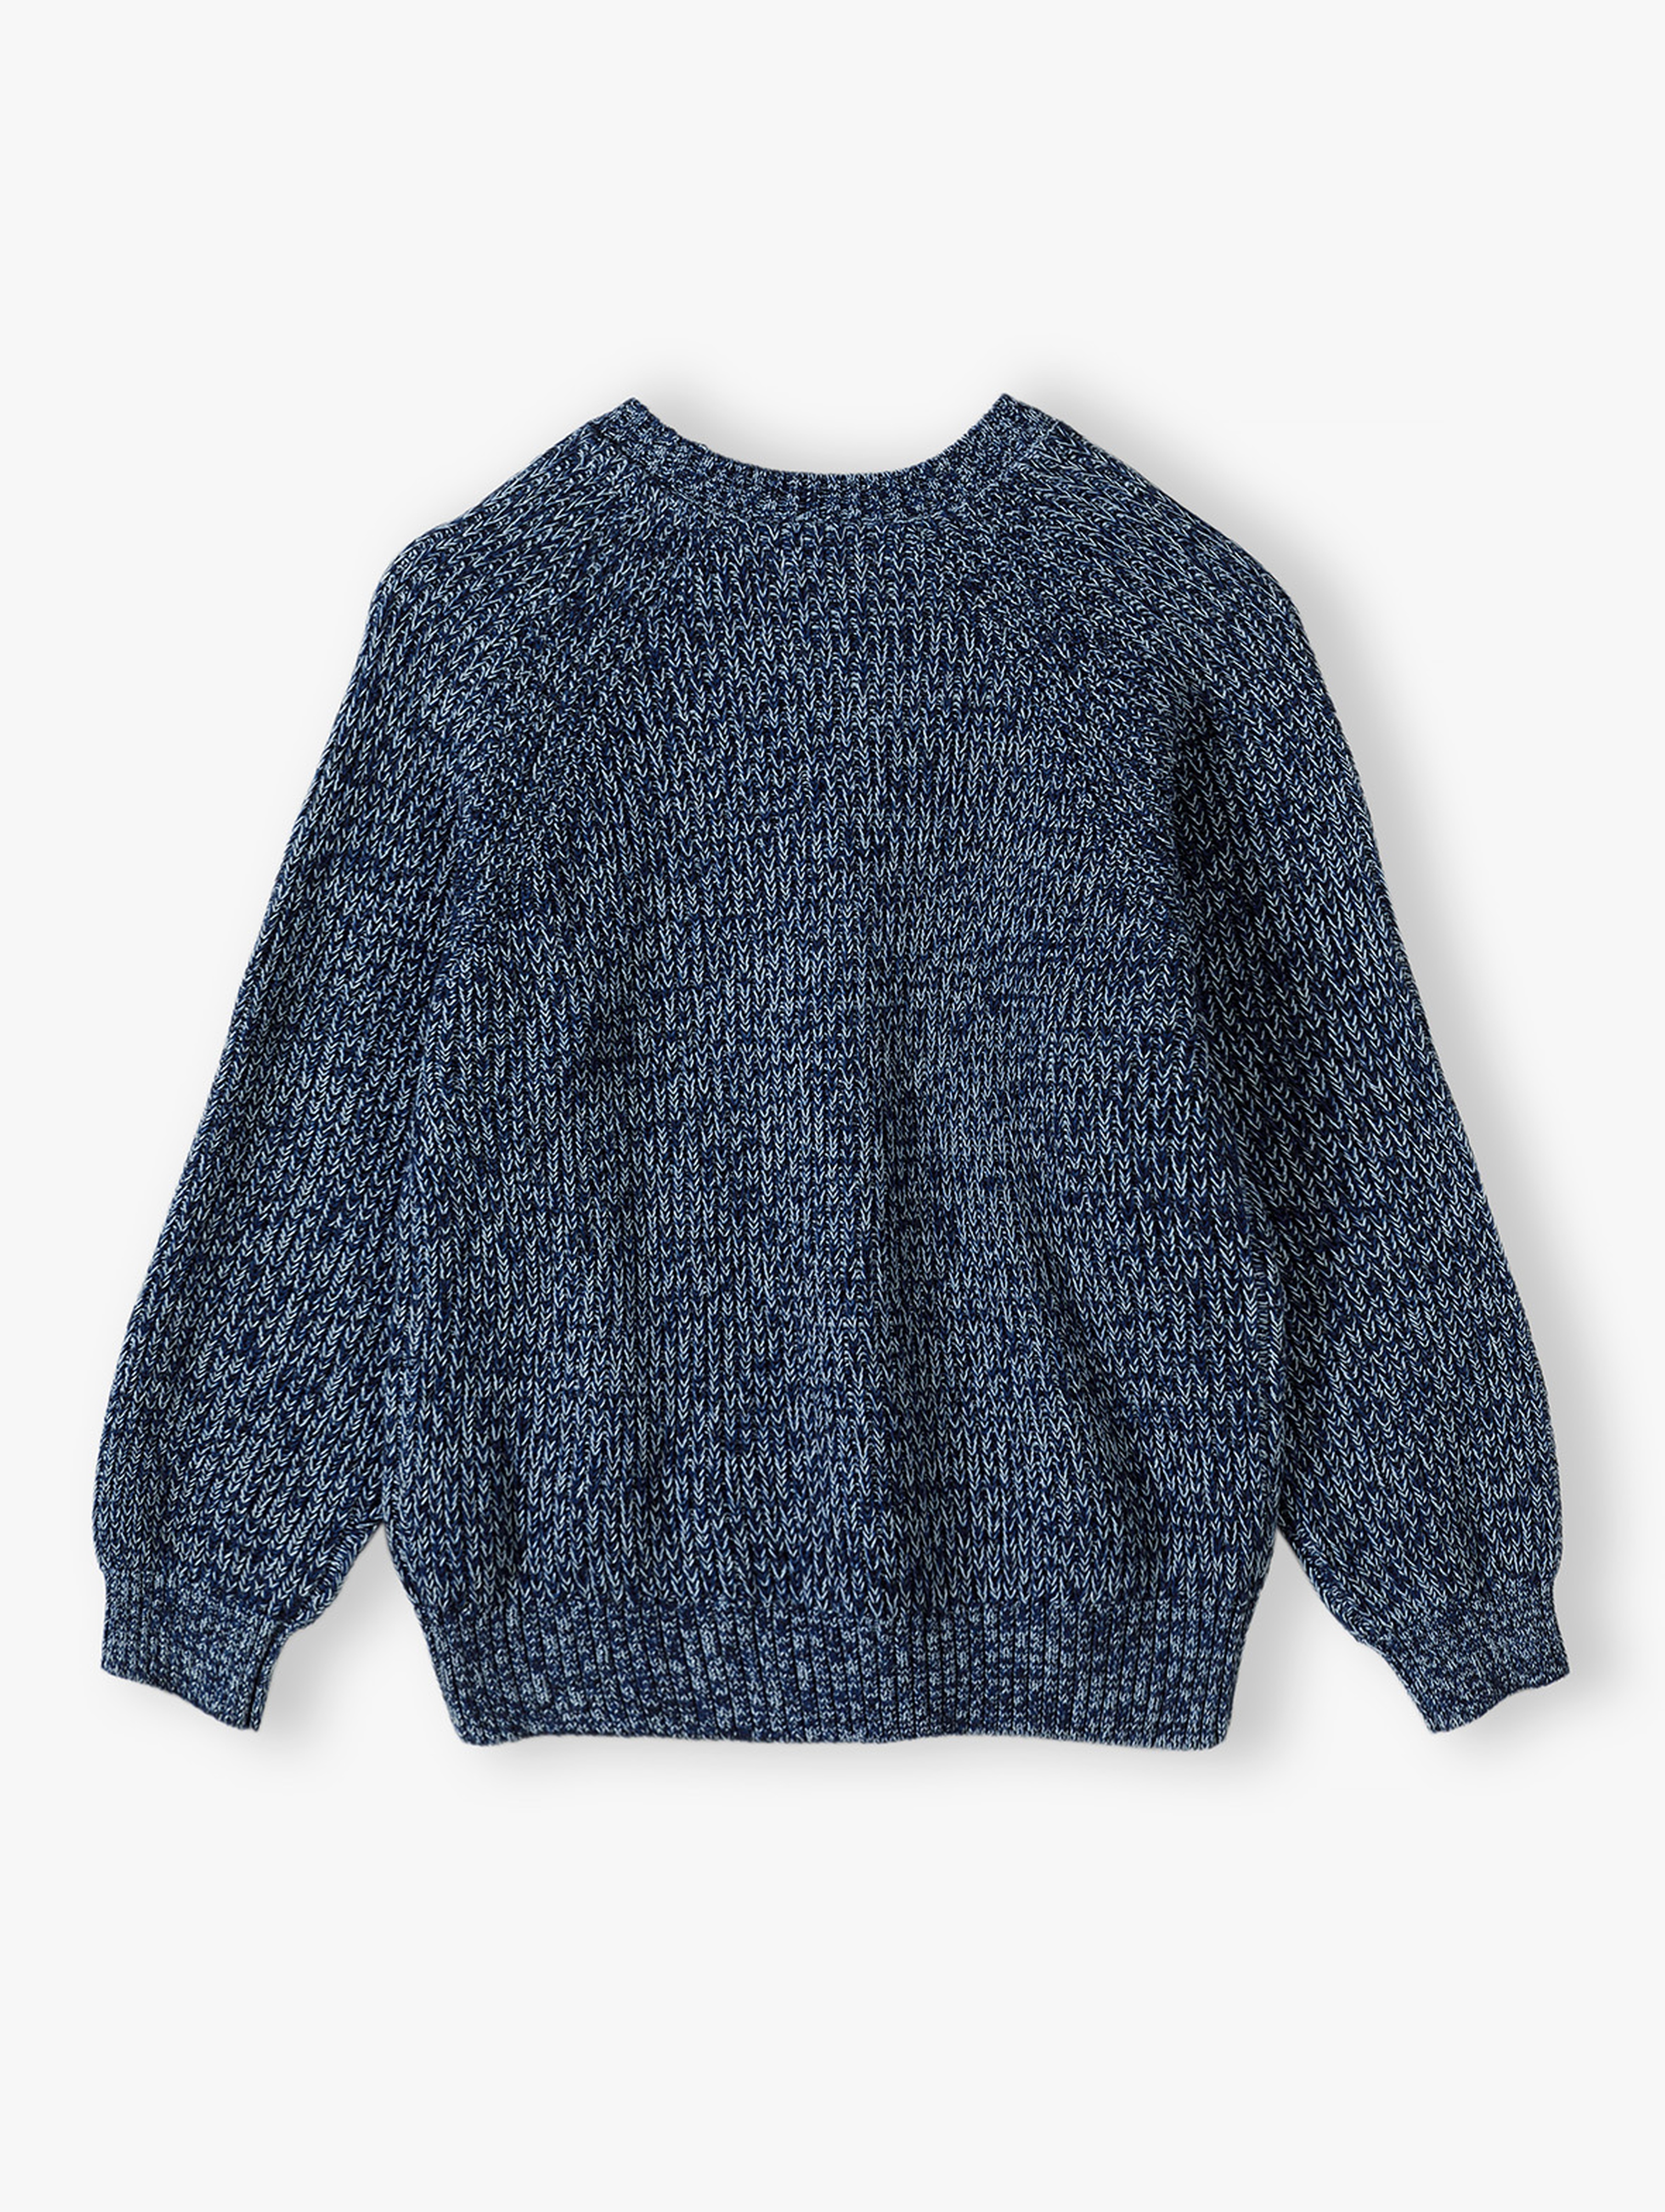 Granatowy sweter dzianinowy dla chłopca - Lincoln&Sharks